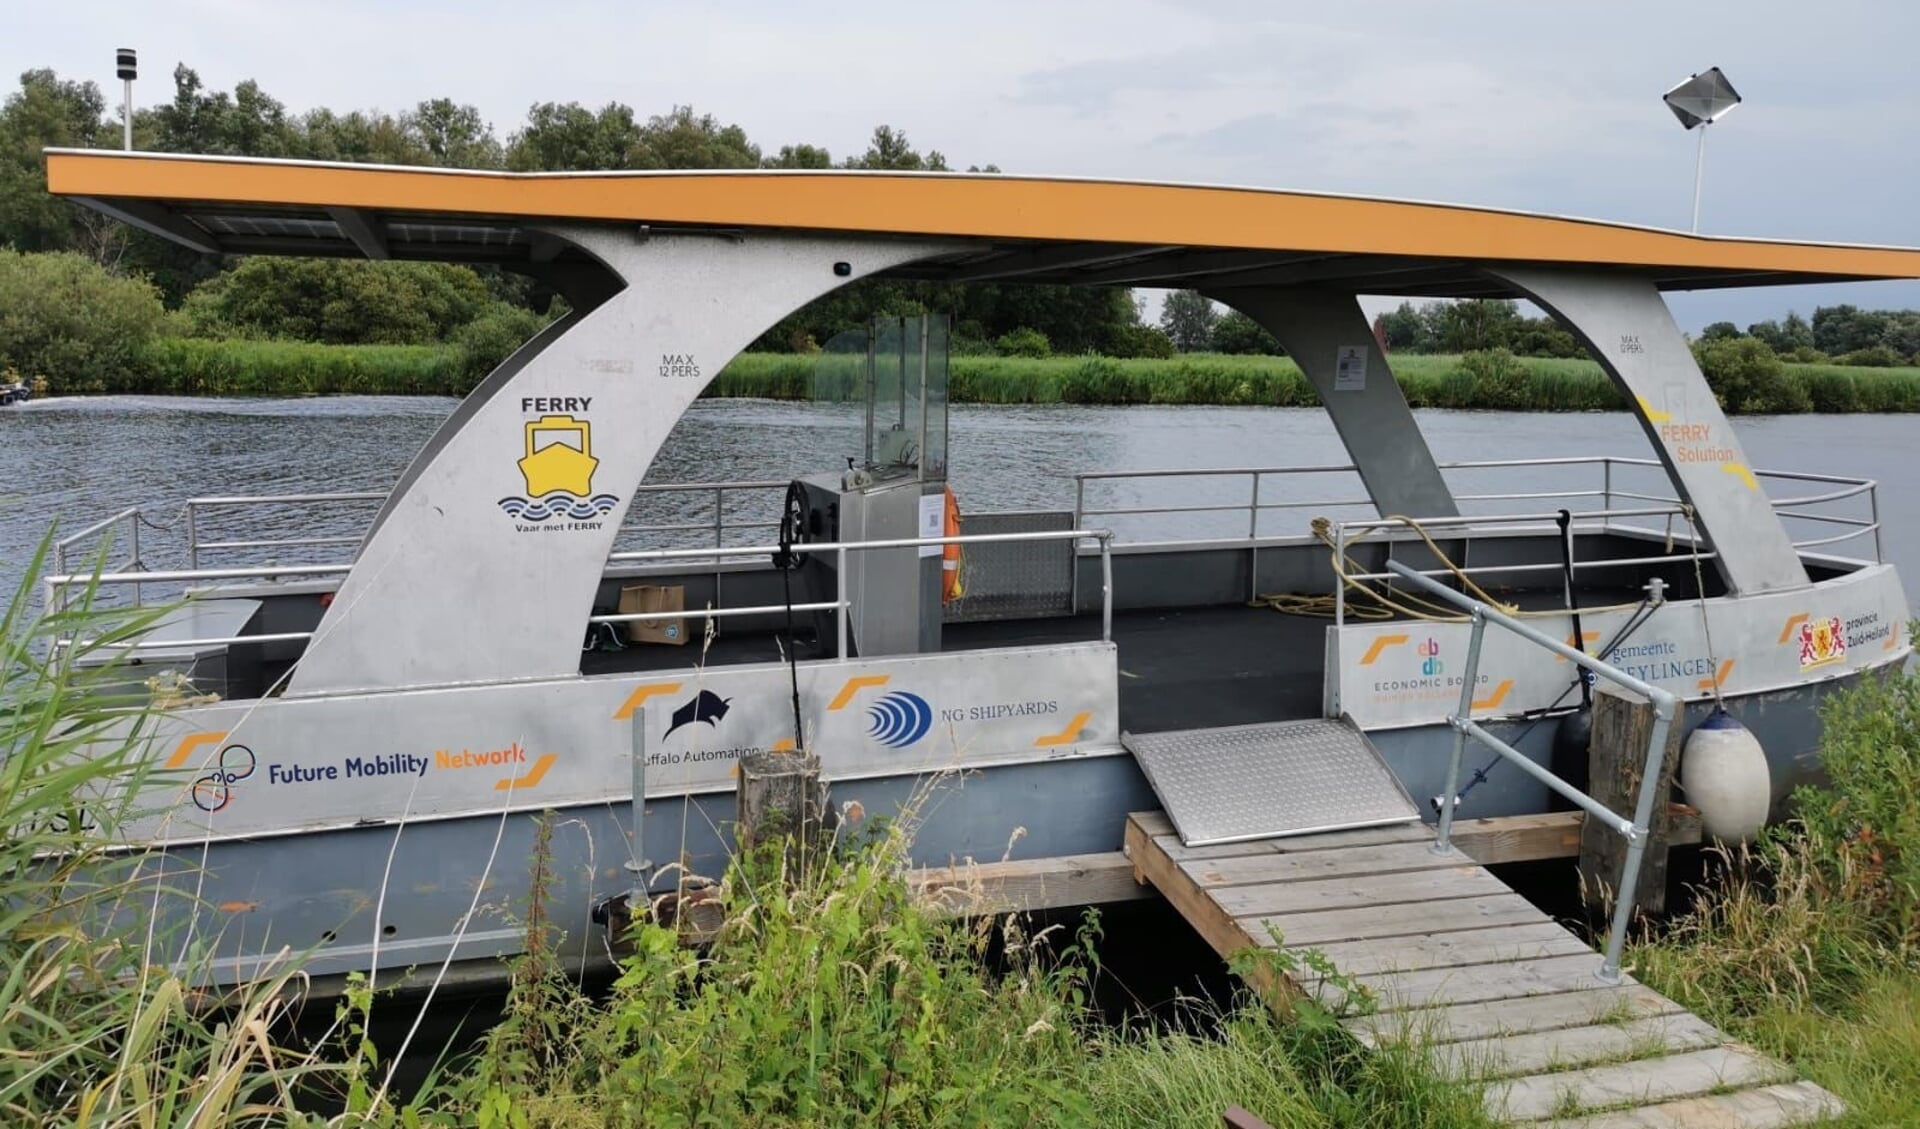 De Ferry Solution vaart voor het tweede jaar in Warmond. | Foto: pr.